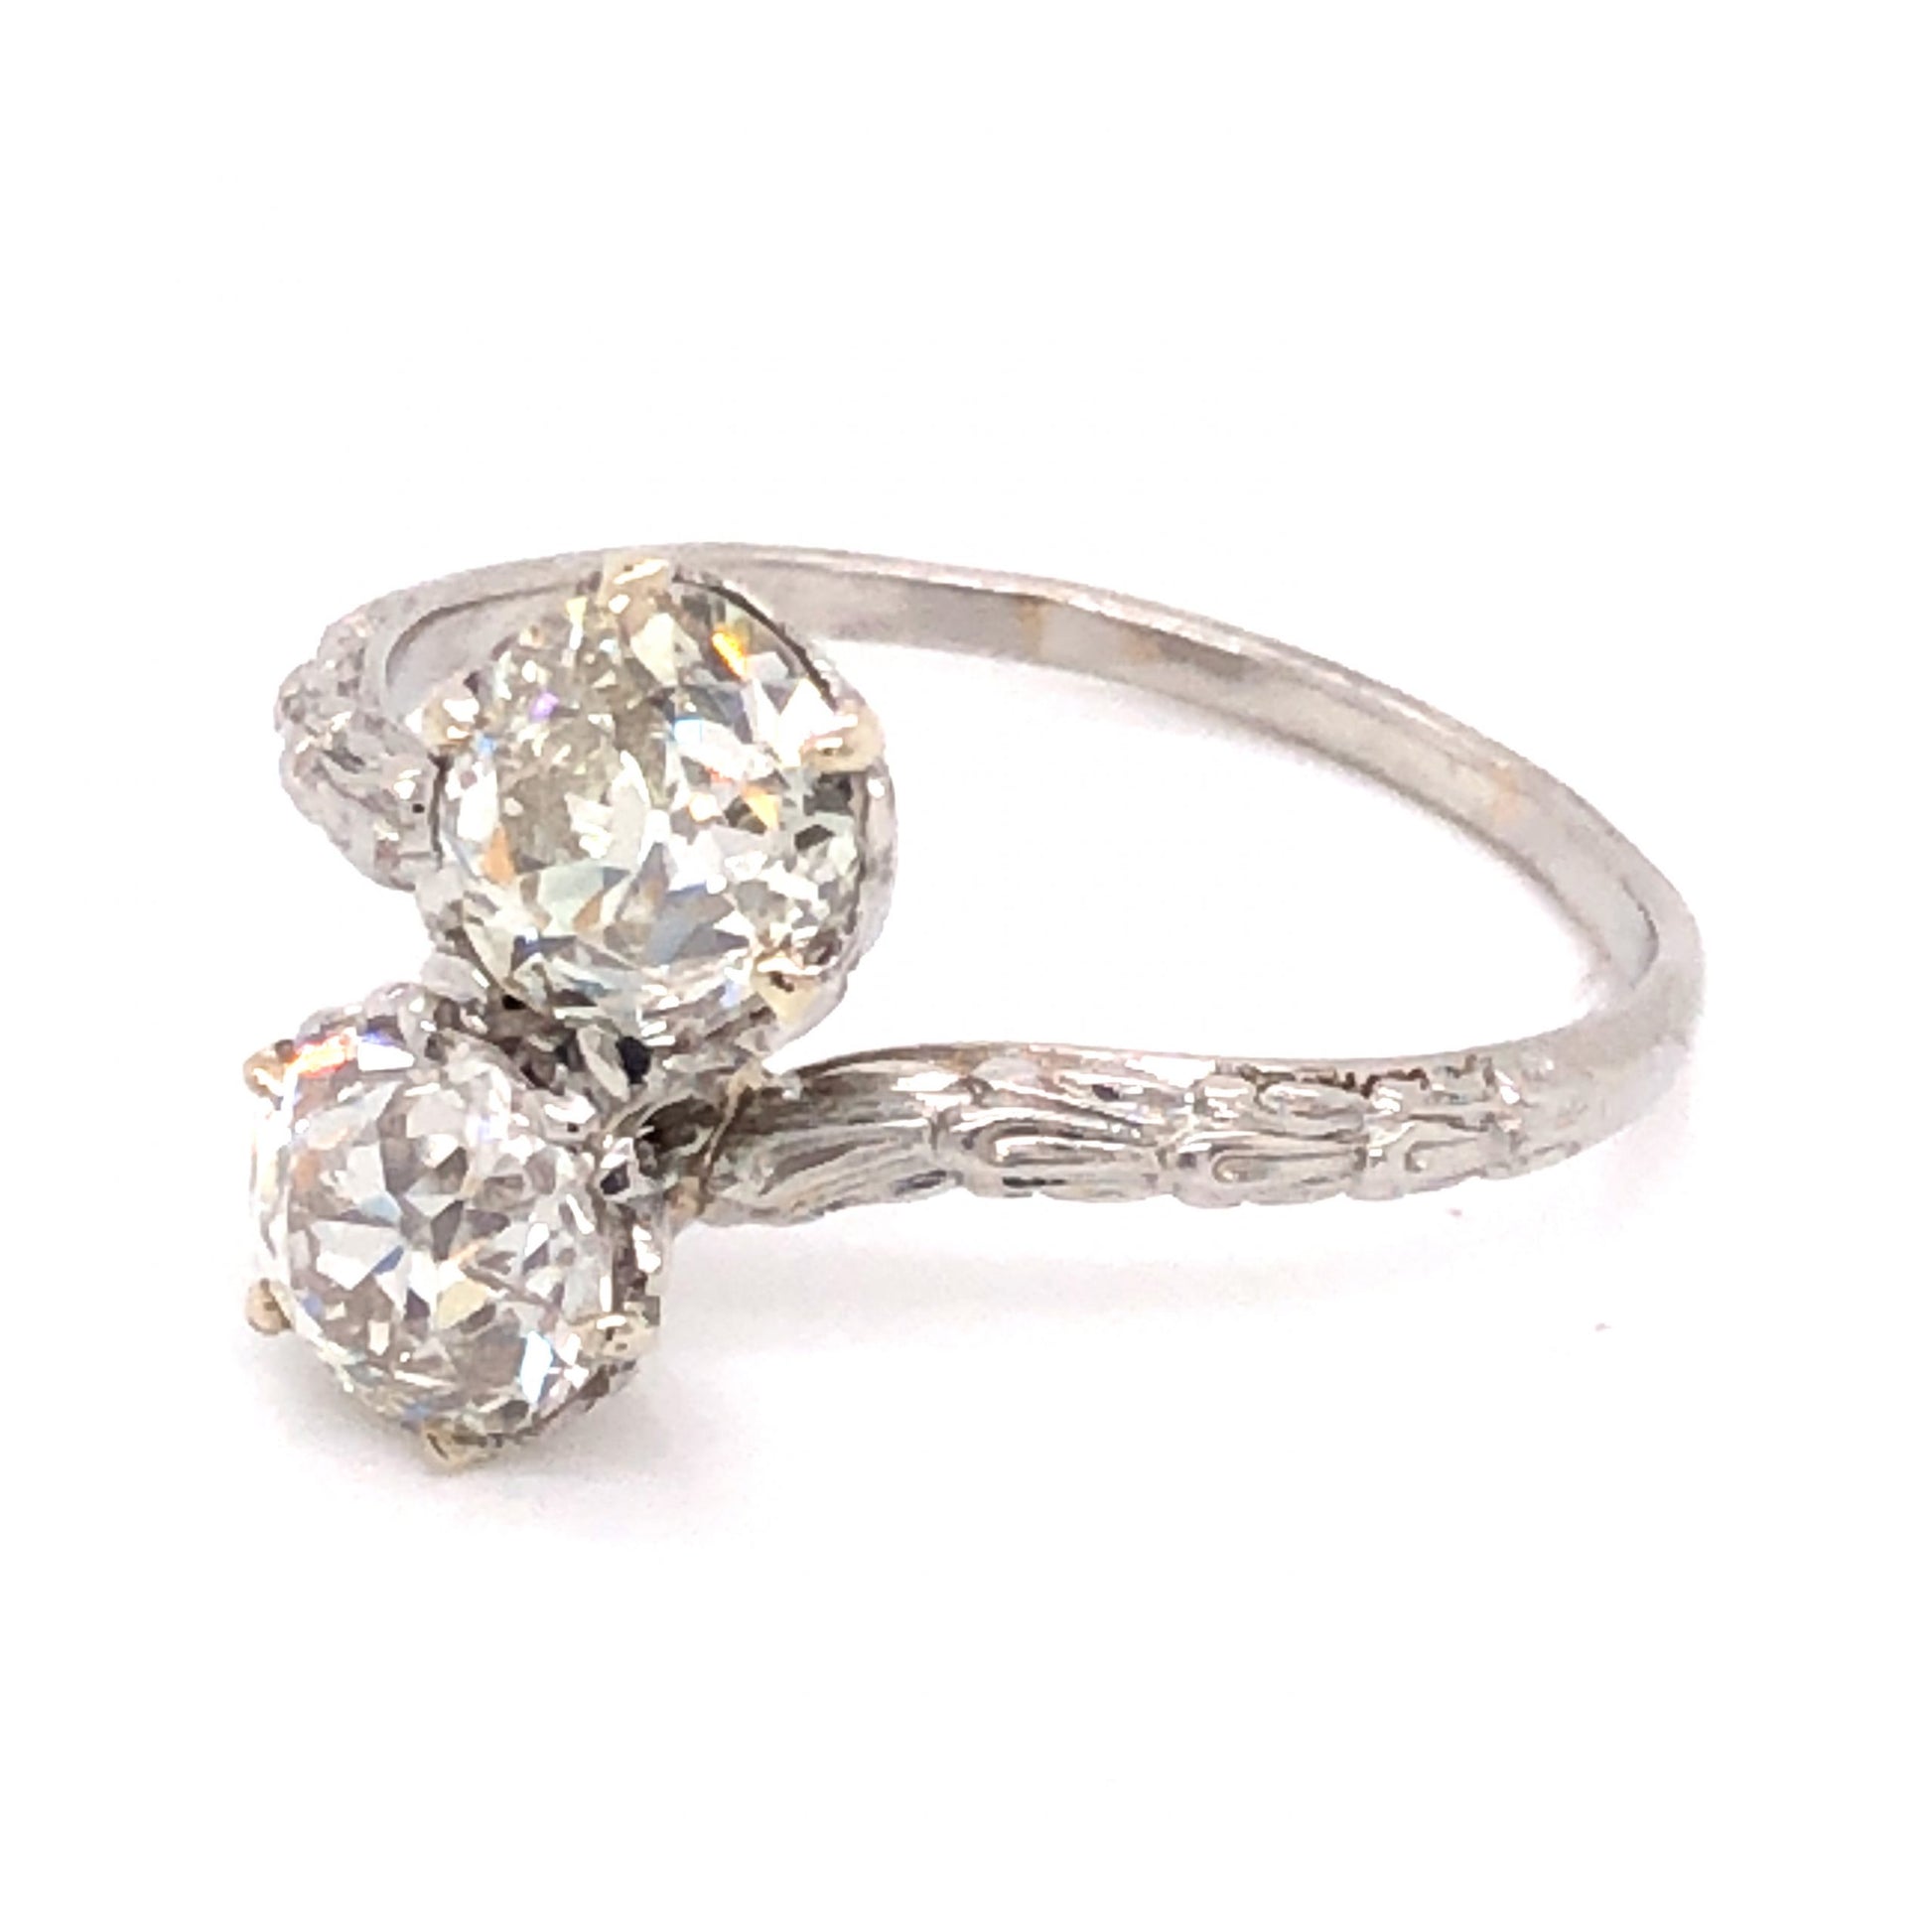 2.15 Art Deco Diamond Engagement Ring in Platinum